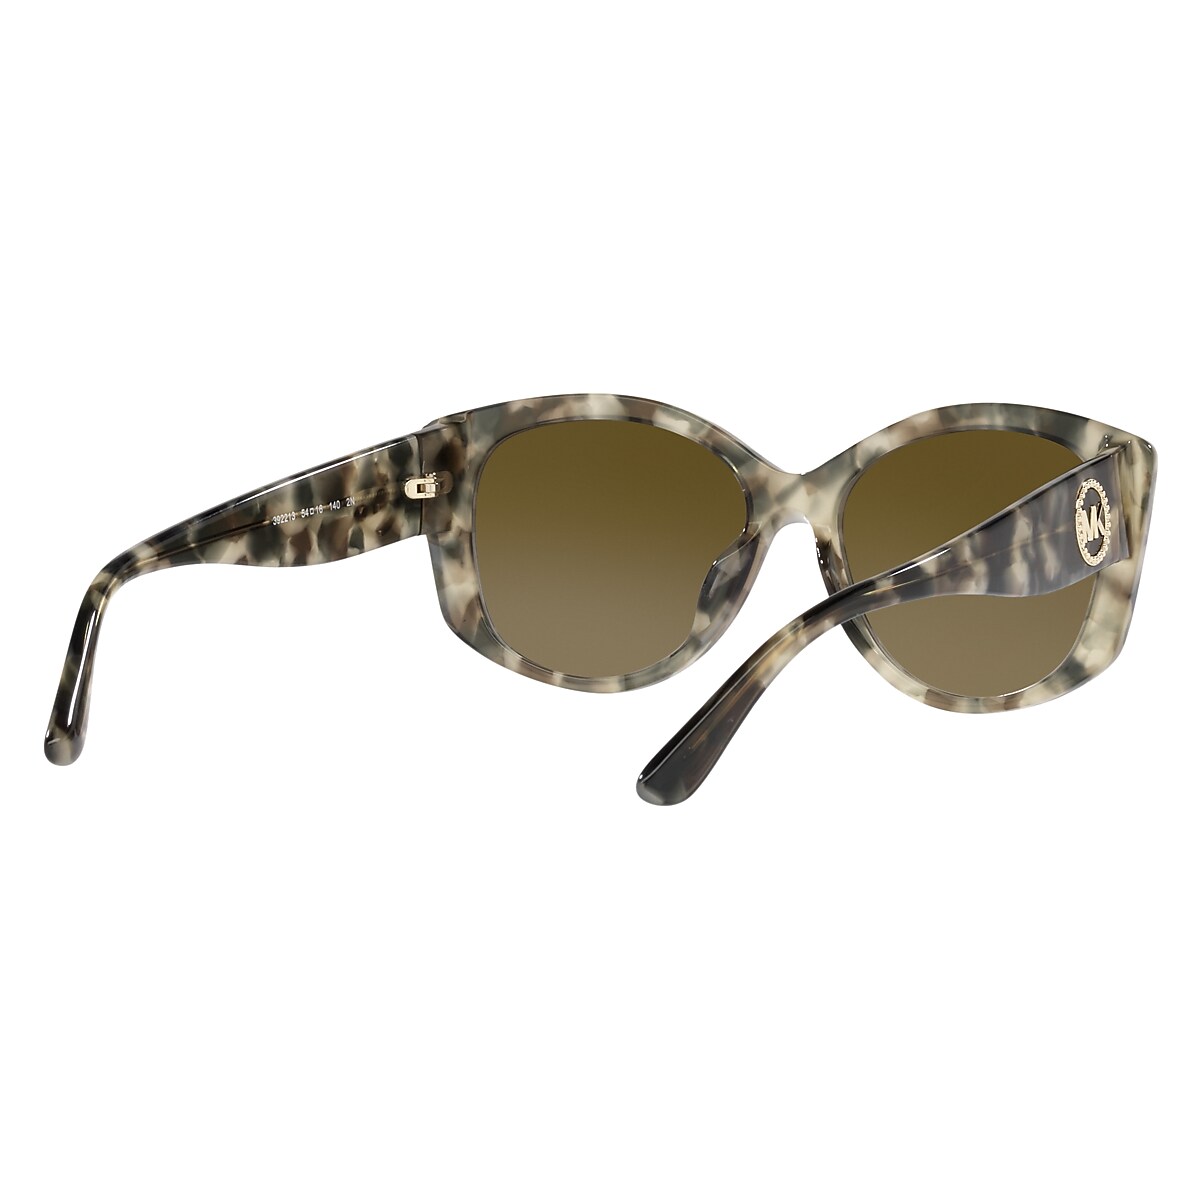 Michael Kors camel leather jacket, Prada tortoiseshell sunglasses